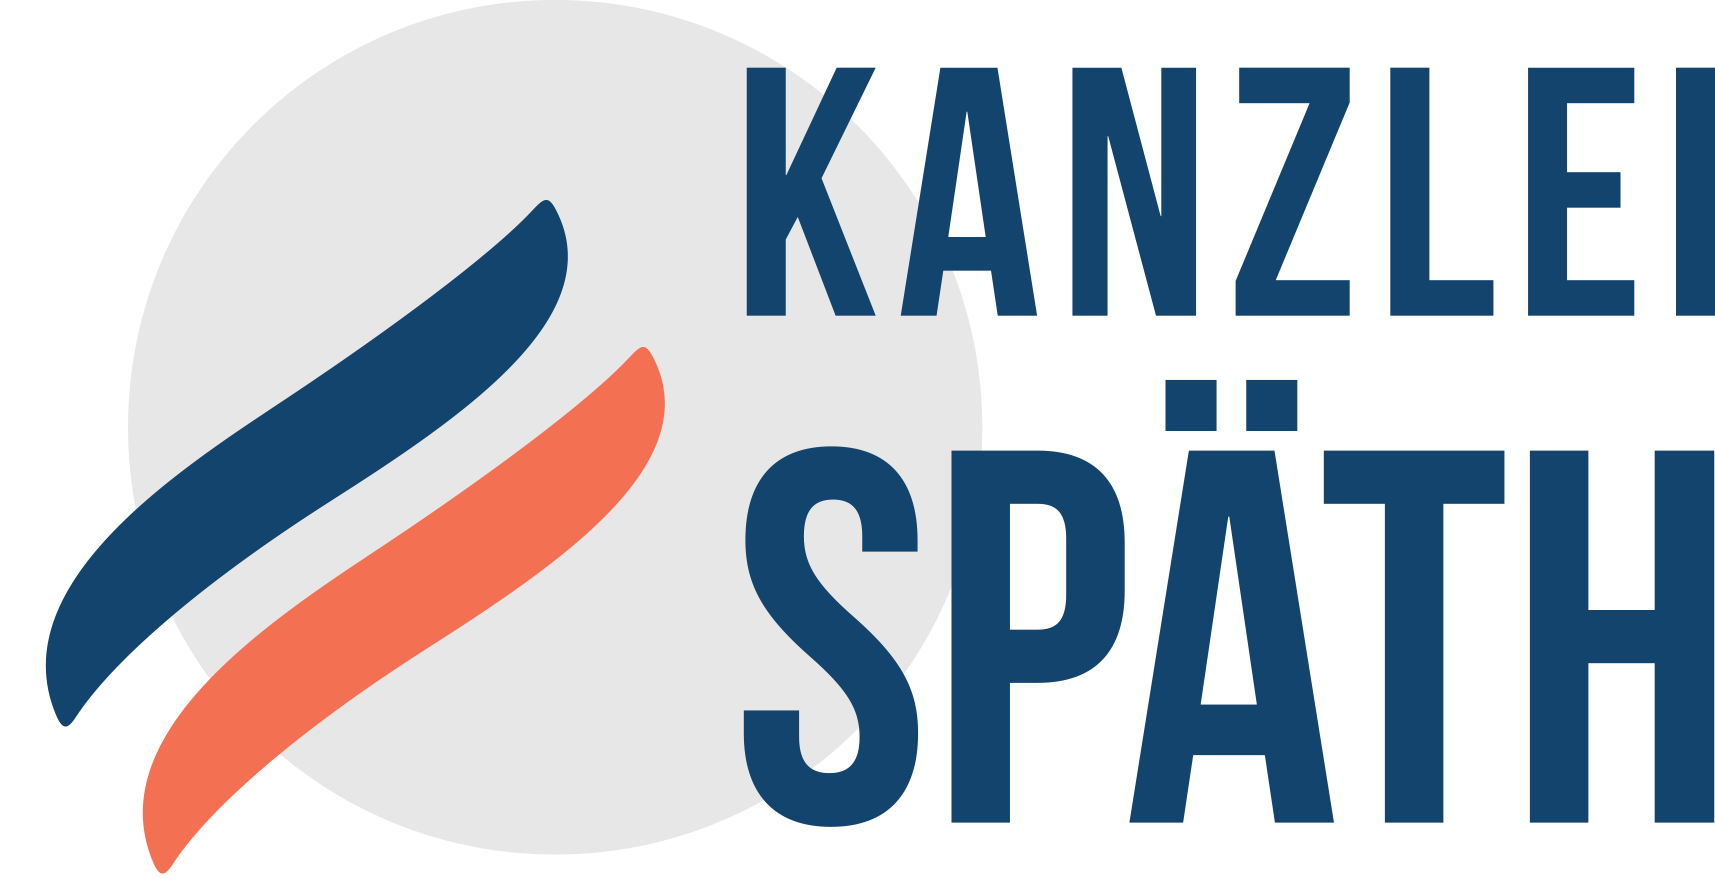 NEU-logo_kanzlei_spaeth